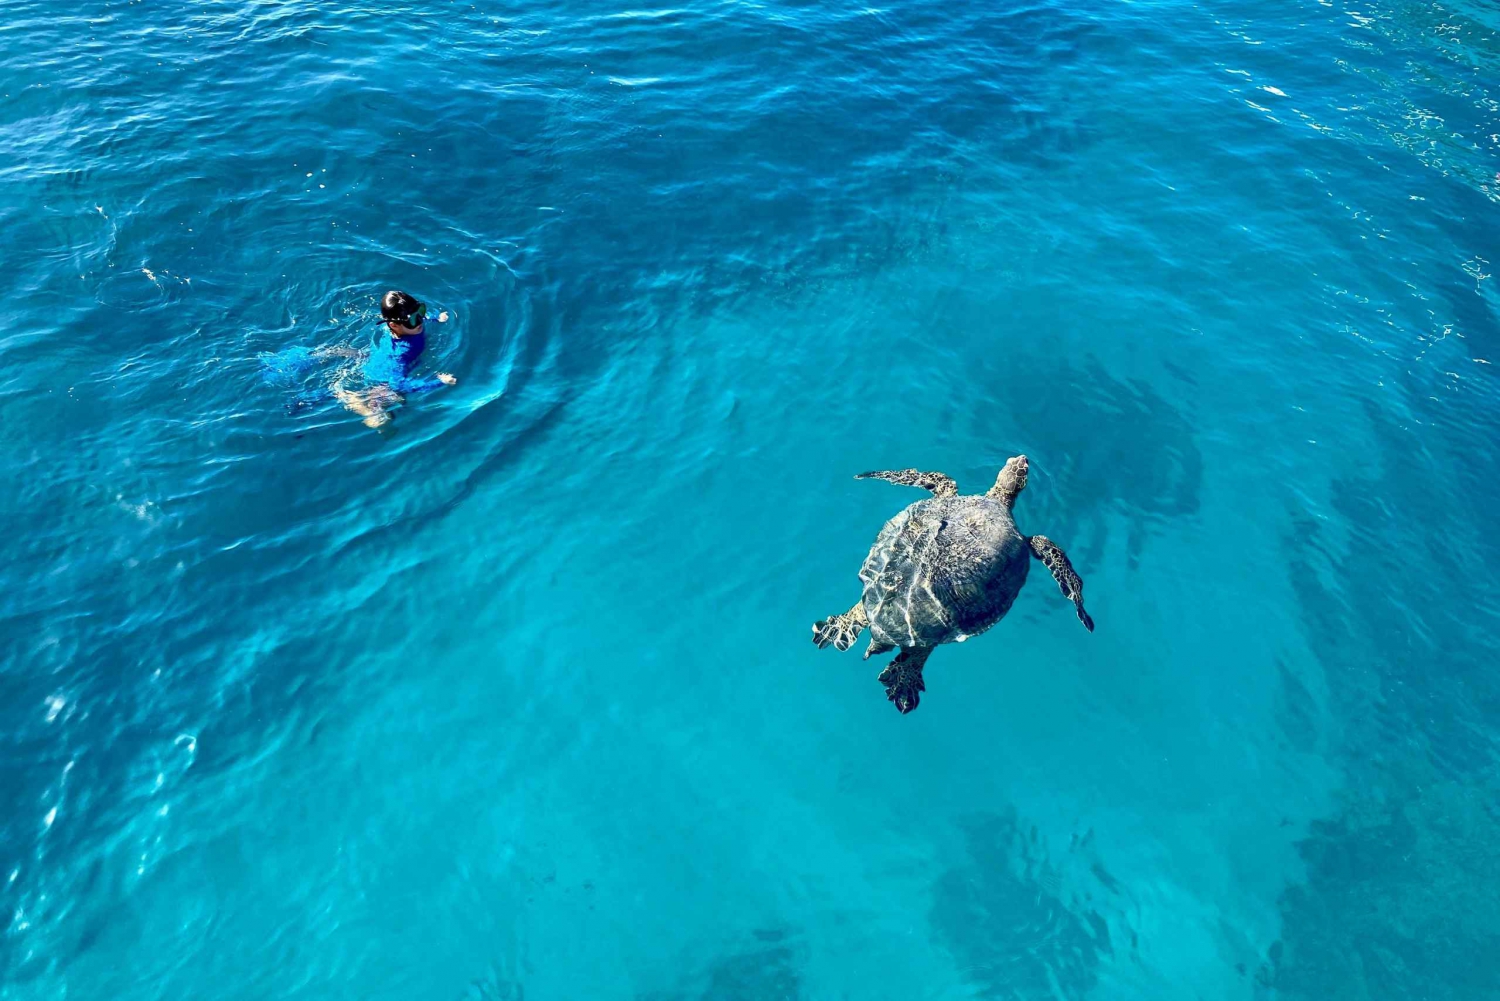 Waikiki: Nurkowanie z żółwiem morskim, wycieczka w małej grupie